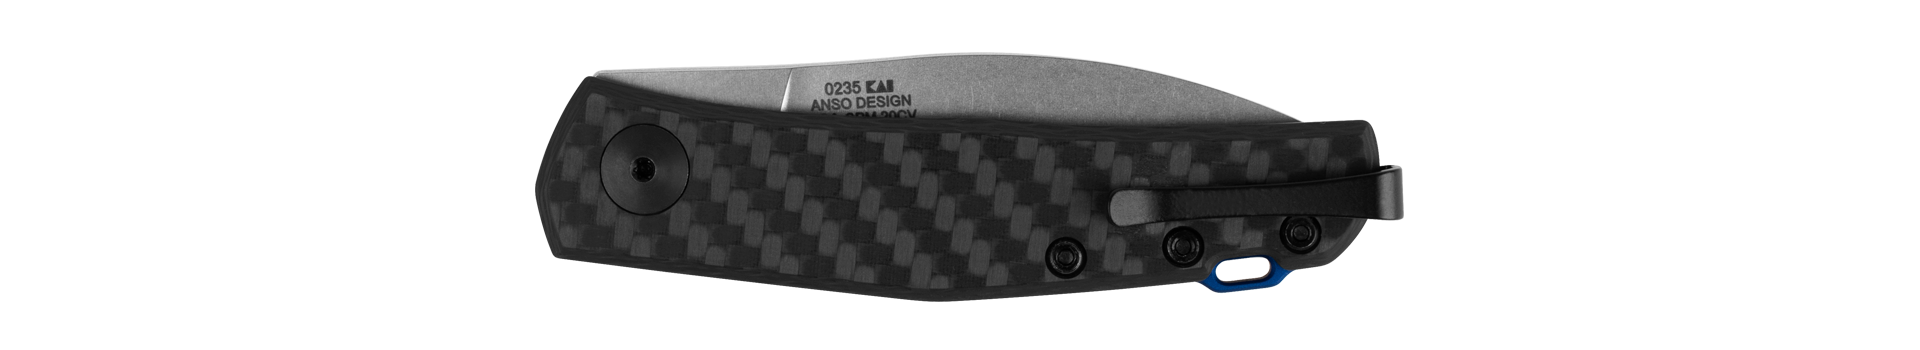 Zero Tolerance Black Carbon Fiber 0235 Anso Slip-joint 20CV Stainless Pocket Knife Knives